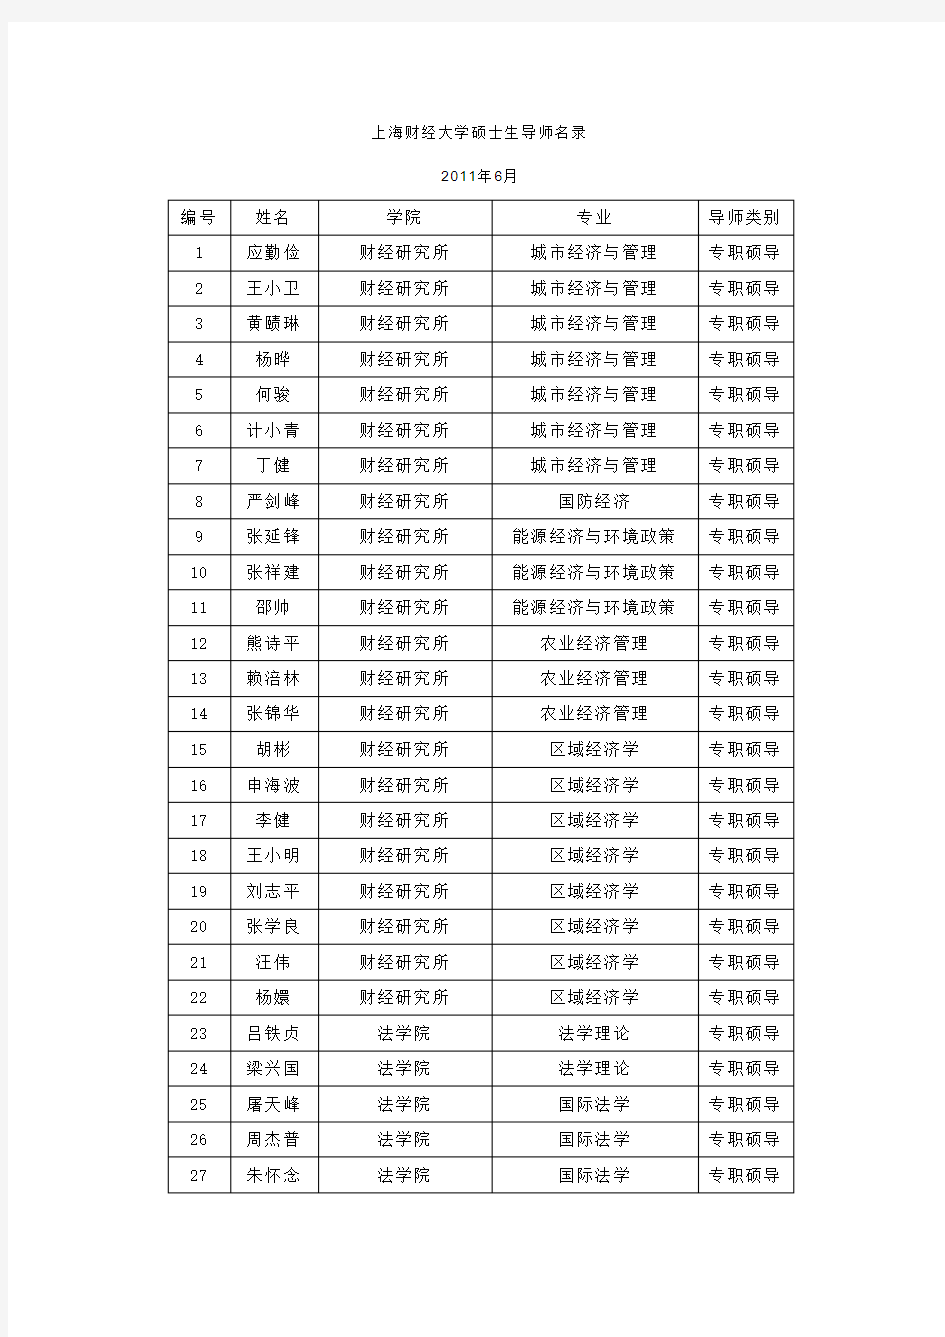 上海财经大学硕士生导师名录